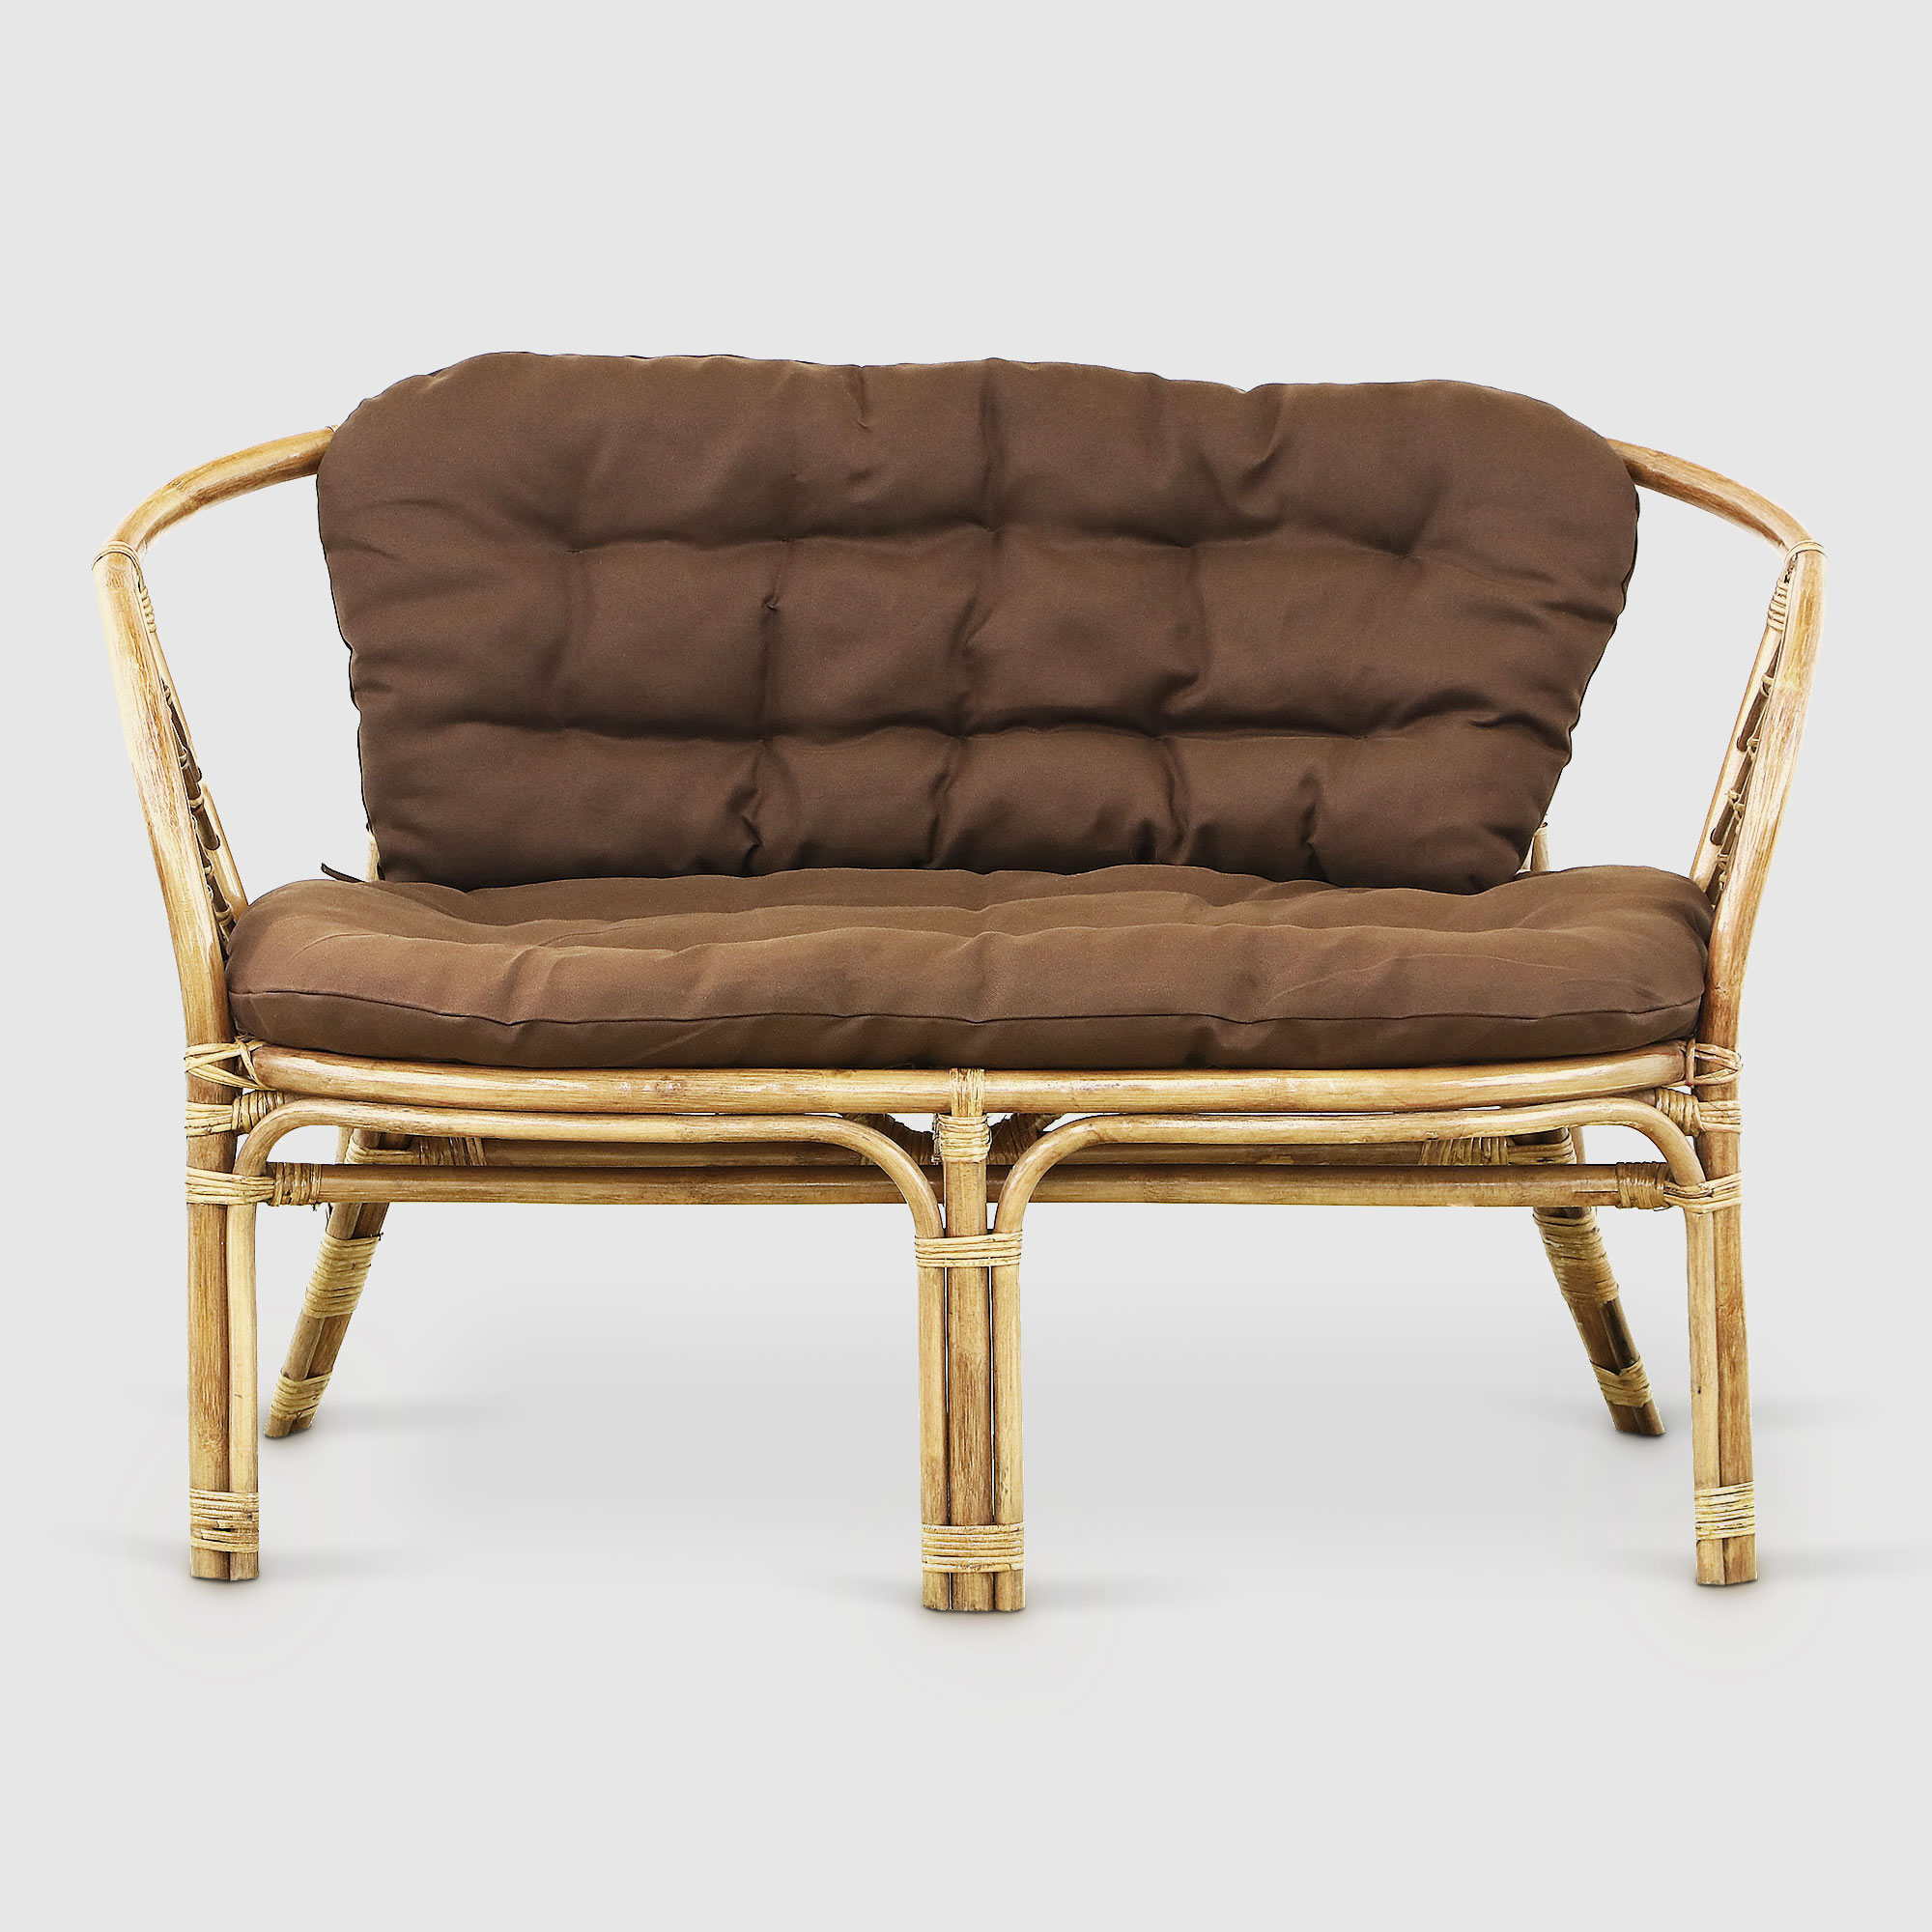 Комплект мебели Rattan grand toscana hon: диван, стол, 2 кресла, цвет светло-коричневый - фото 3